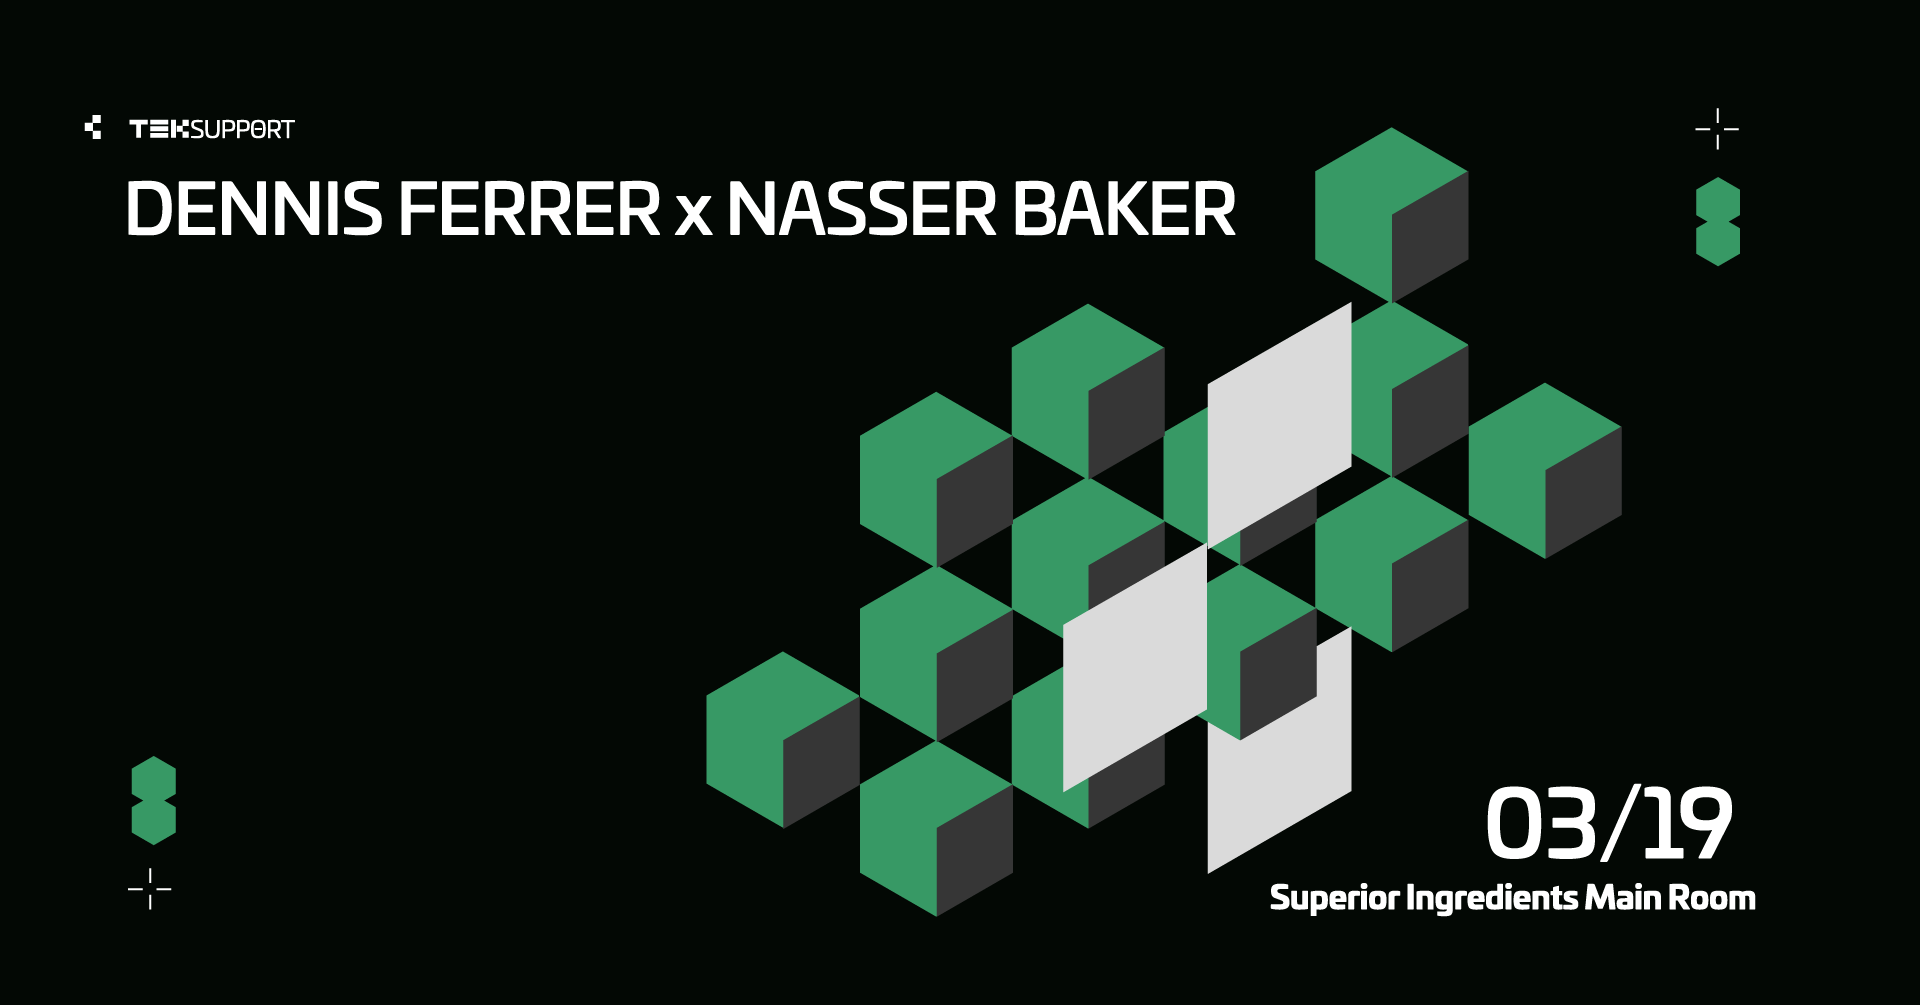 Teksupport: Dennis Ferrer x Nasser Baker - フライヤー表